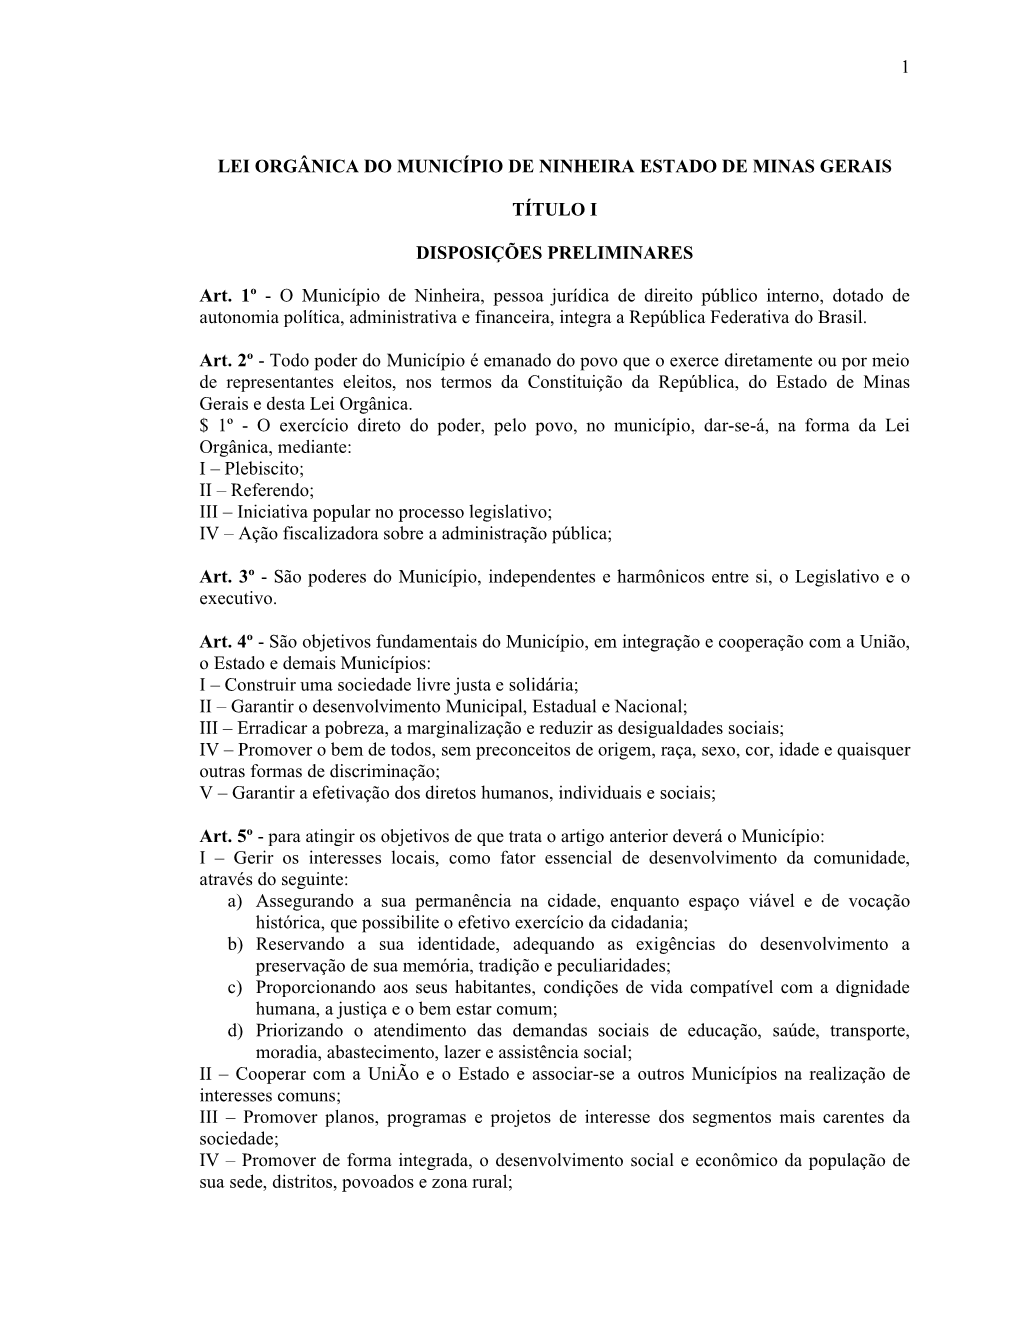 Lei Orgânica Do Município De Ninheira Estado De Minas Gerais